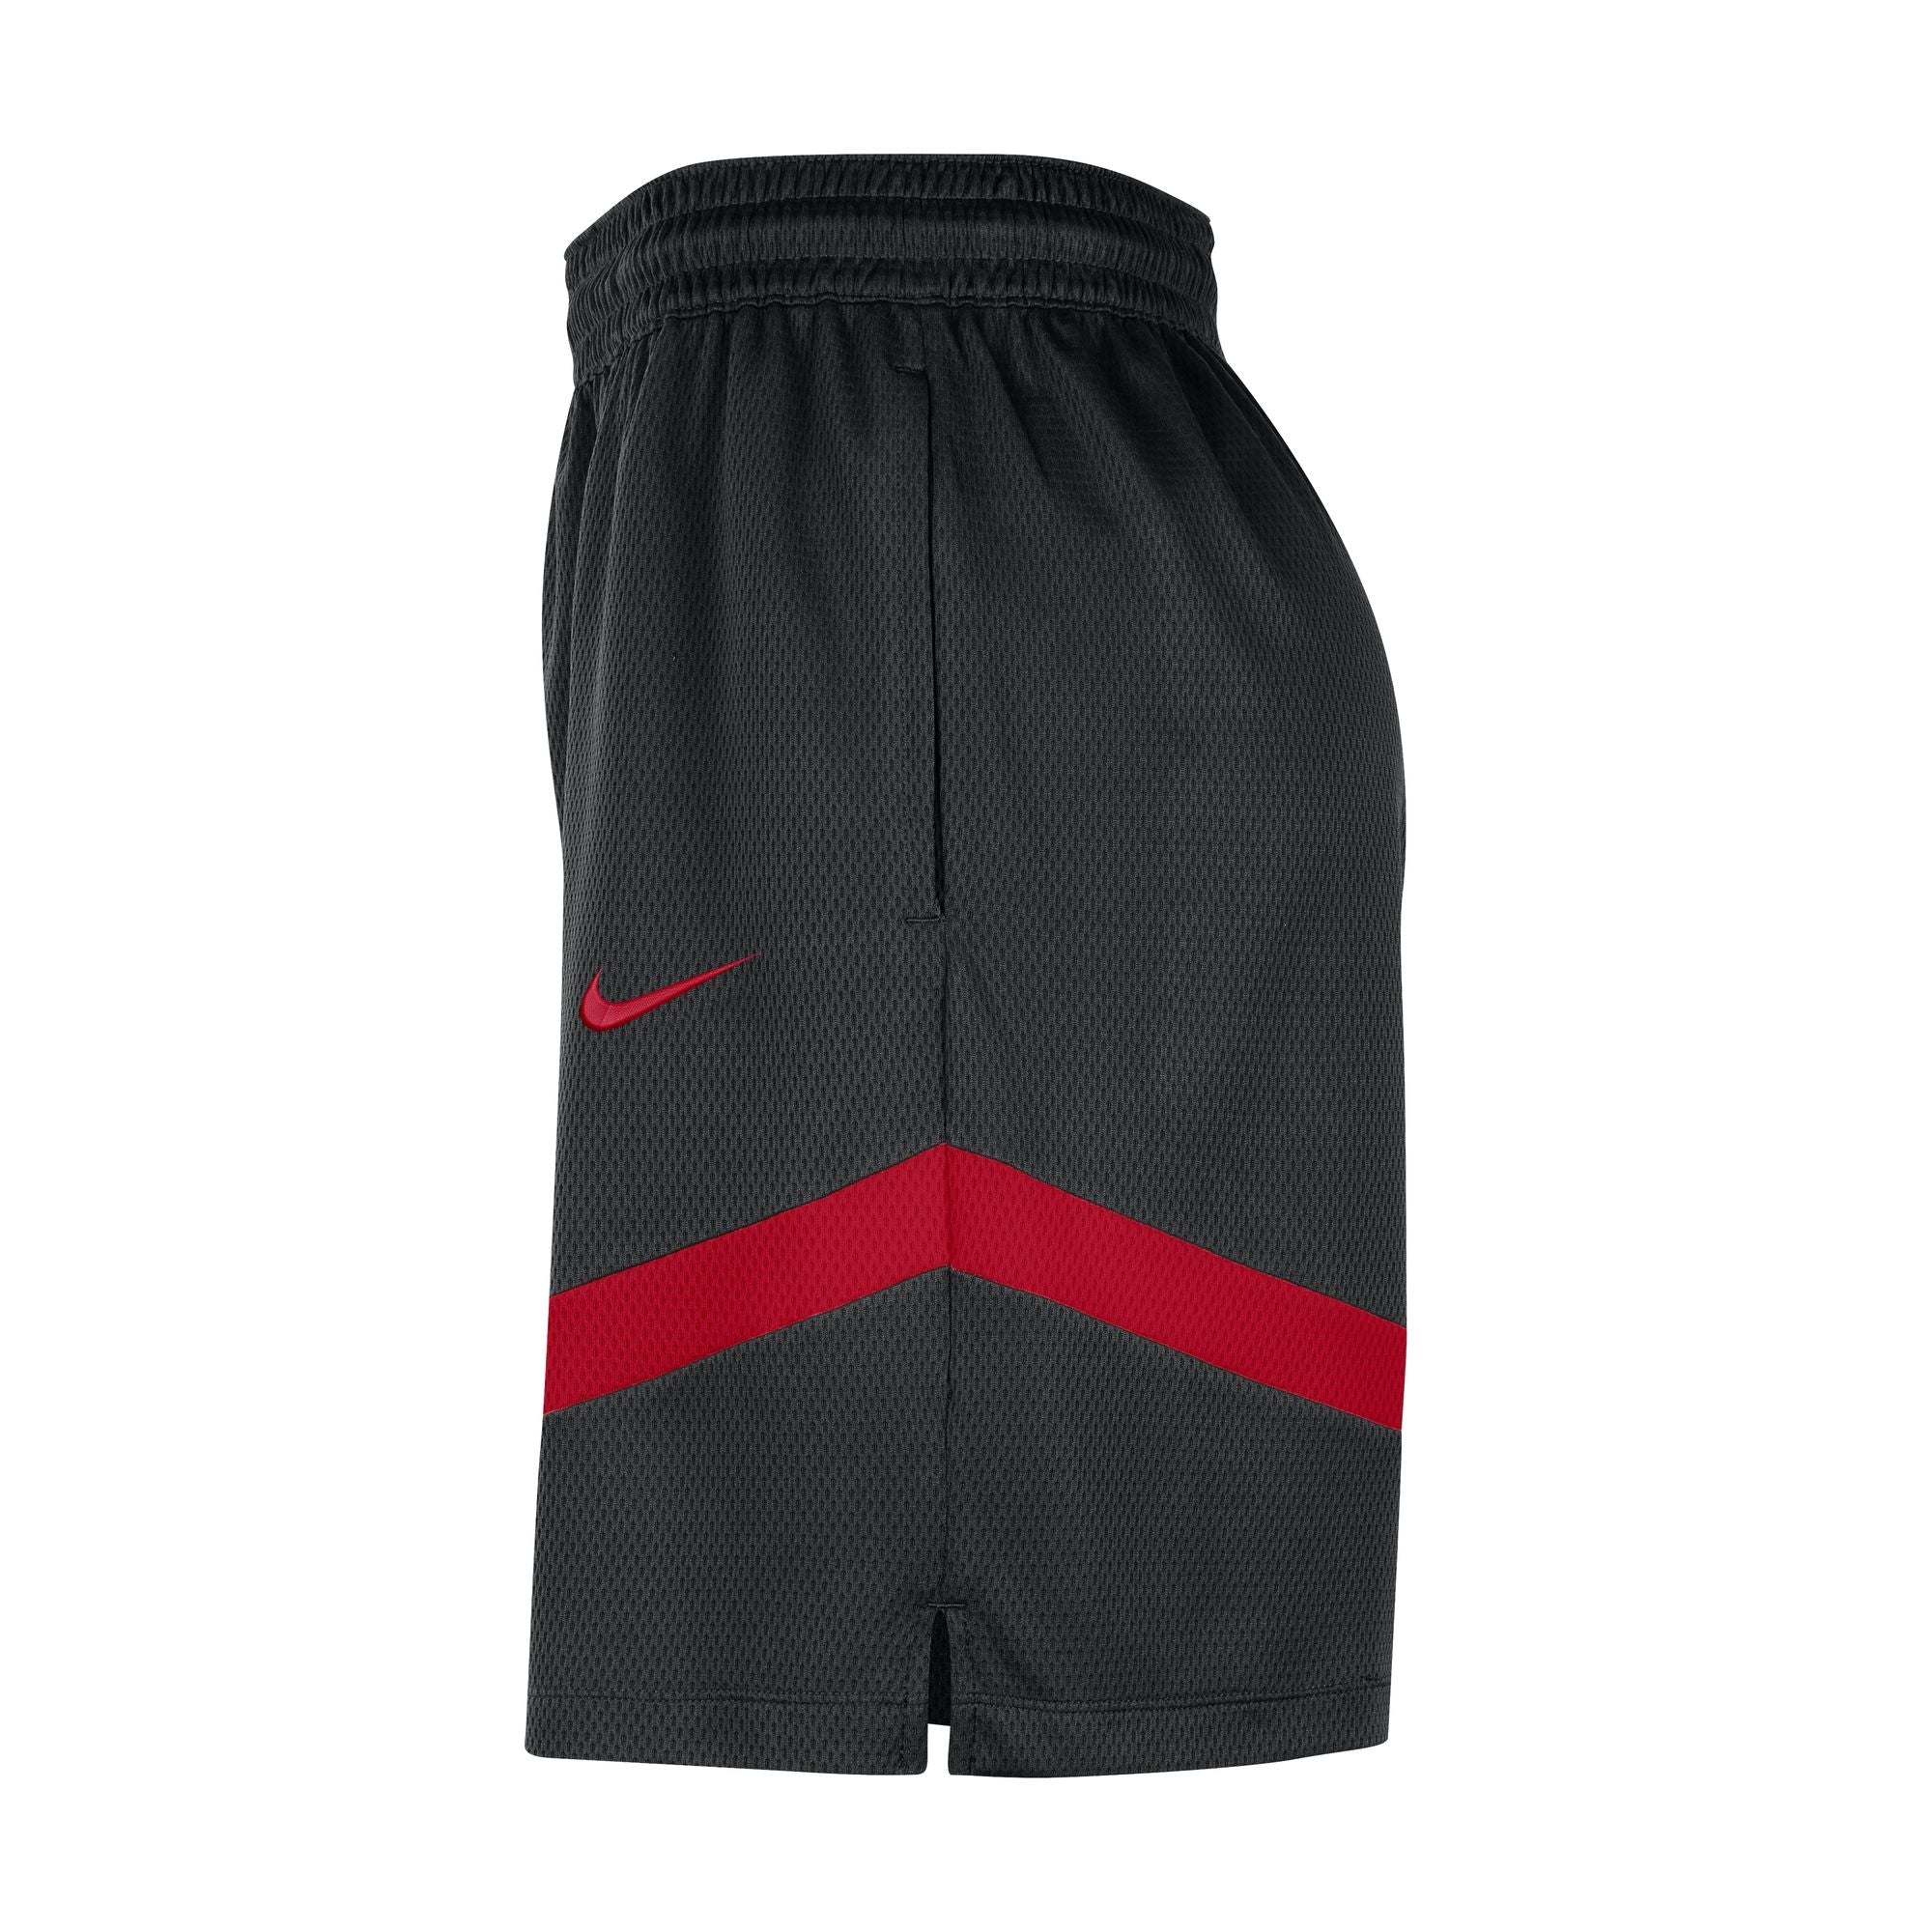 Chicago Bulls Nike Player Short - University Red -Mens